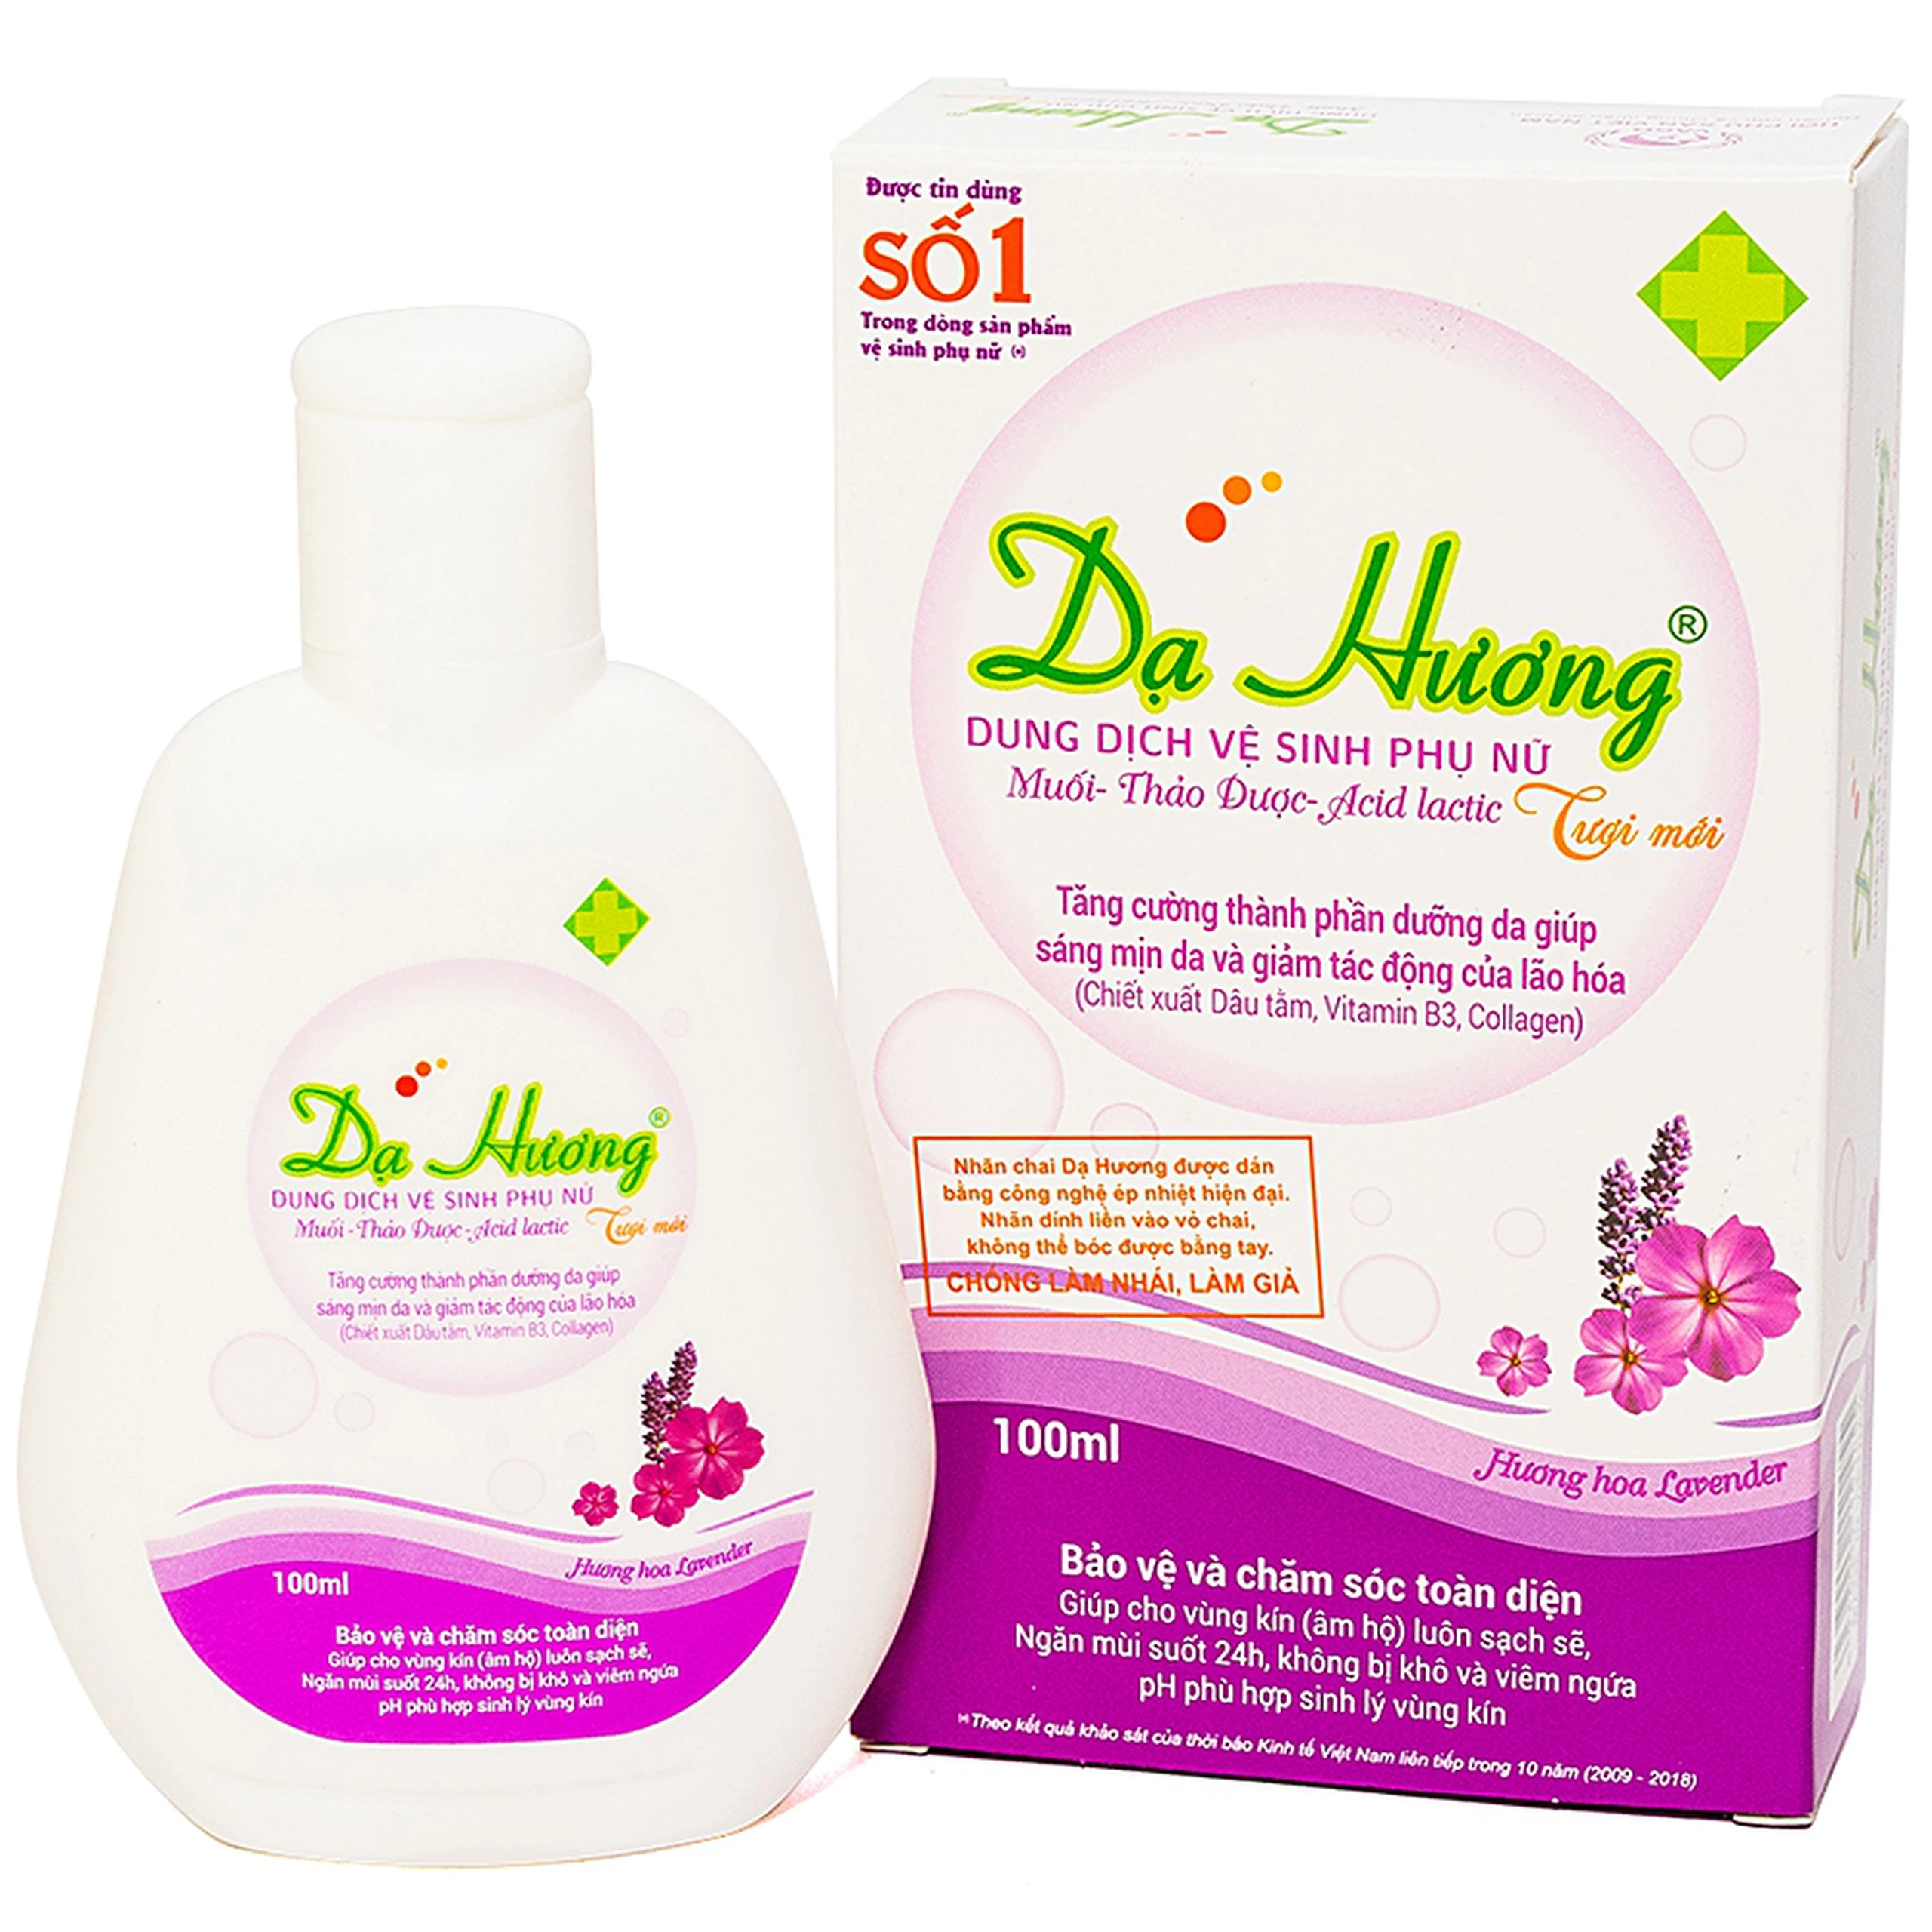 Dung dịch vệ sinh phụ nữ Dạ Hương Lavender Hoa Linh làm sạch vùng kín, ngăn mùi suốt 24h (100ml)